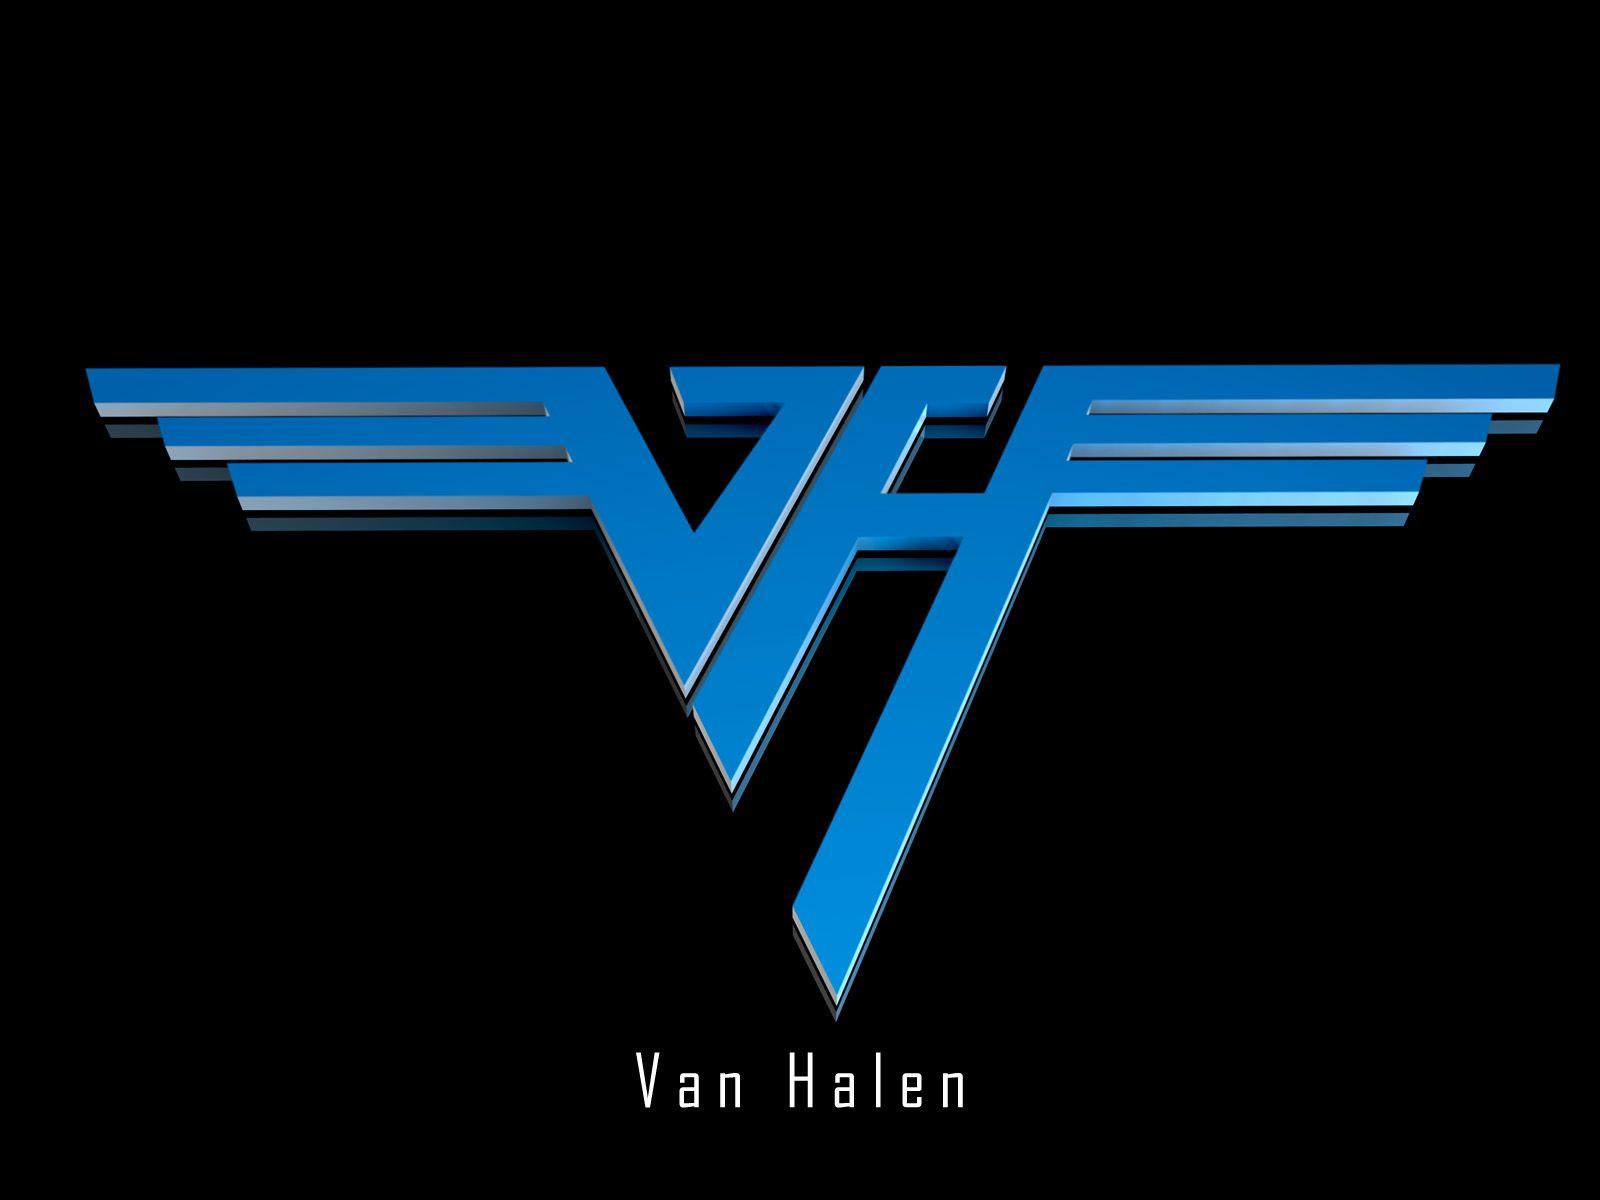 Van Halen Logo - Van halen logo - logo success